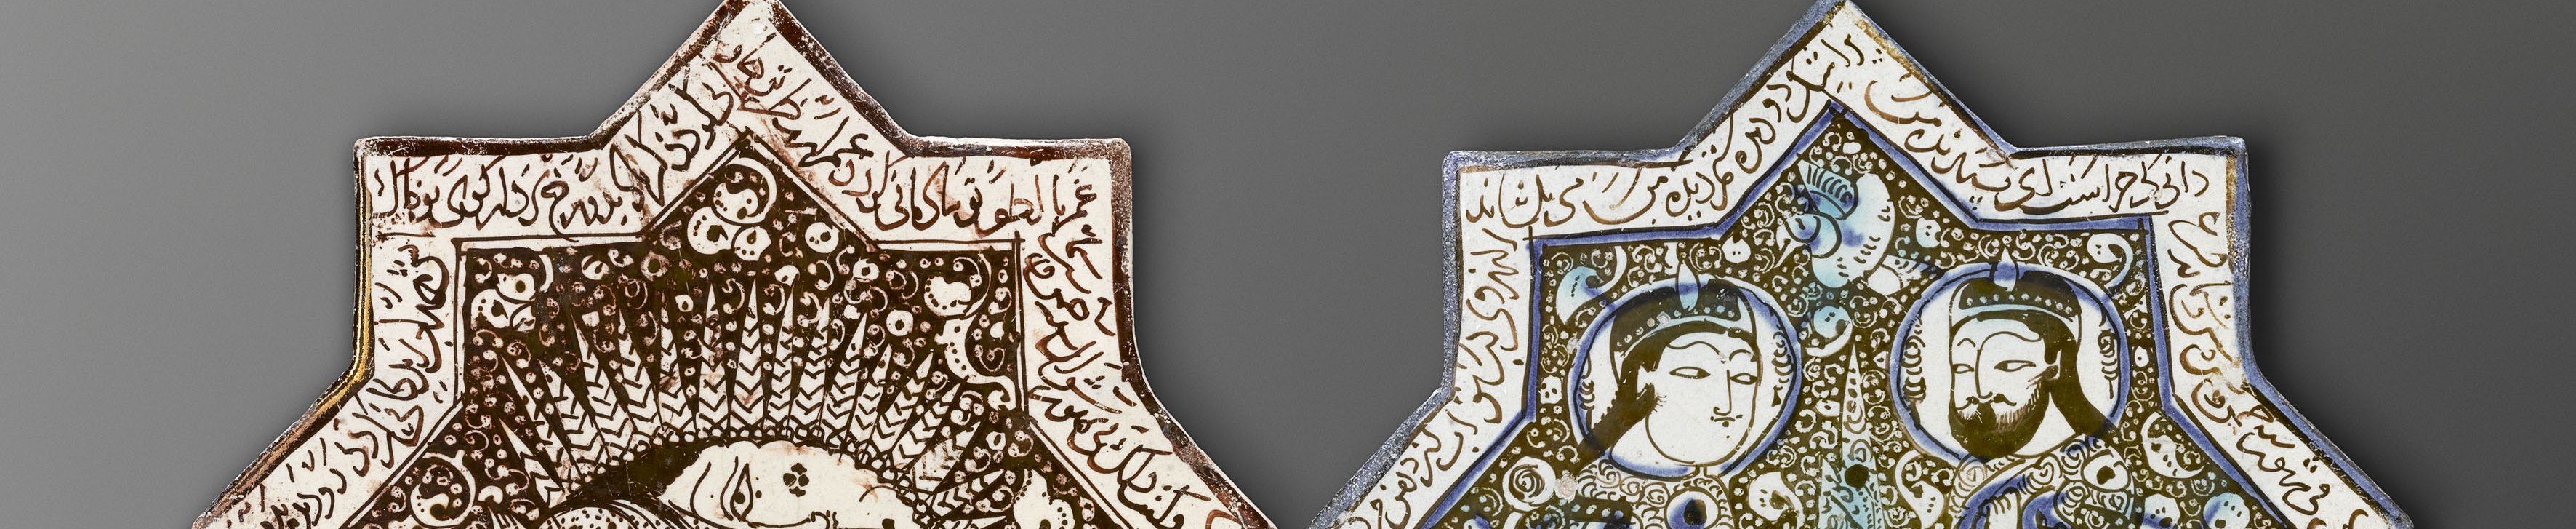 Ensemble de cinq carreaux de revêtement, 3e quart du XIIIe siècle, Iran, Paris, Musée du Louvre. Photo : Musée du Louvre. Dist. RMN-Grand-Palais / Hughes Dubois